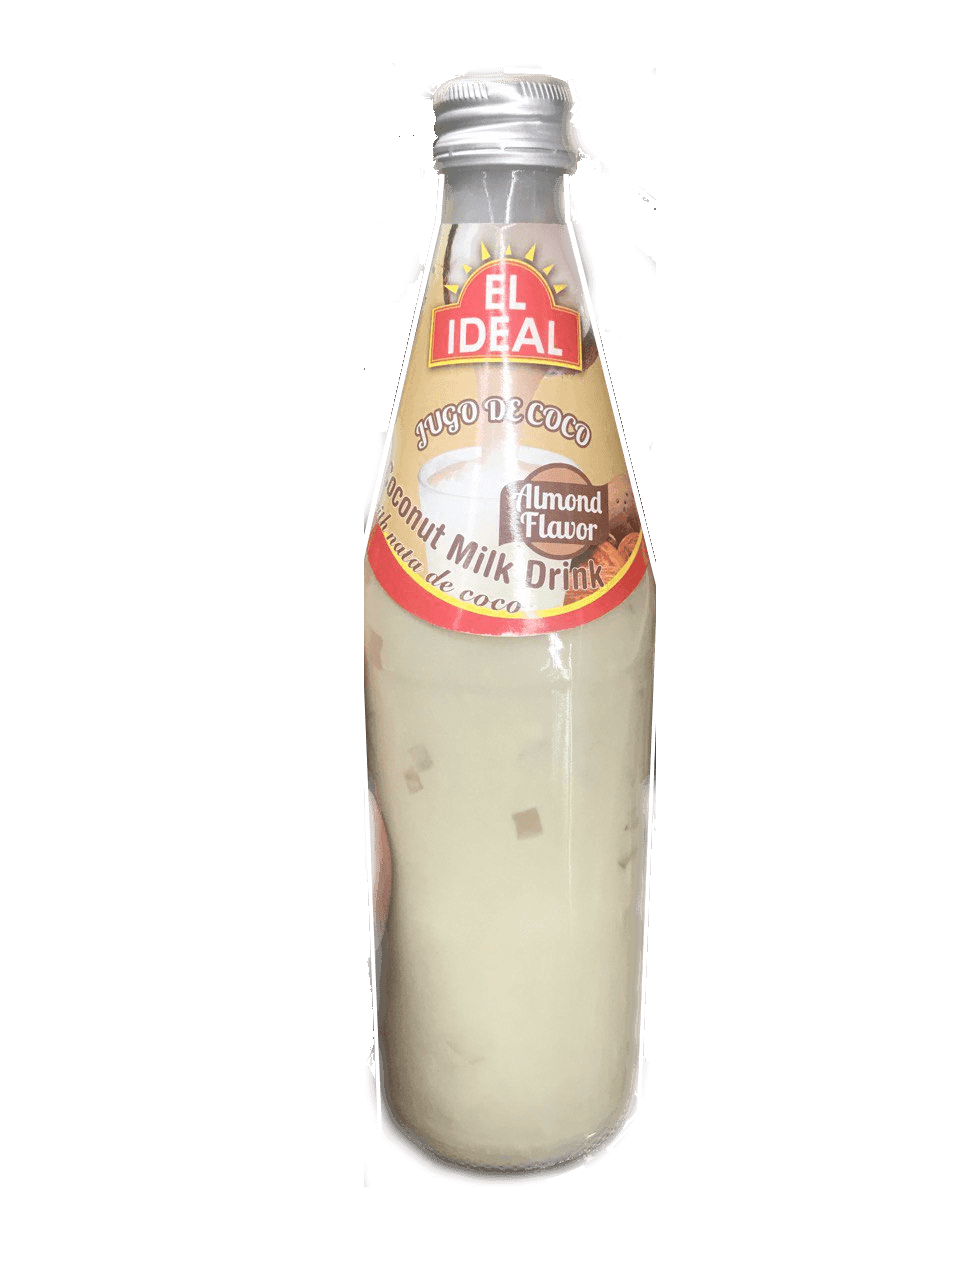 El Ideal - Coconut Milk Drink Almond Flavor 17oz